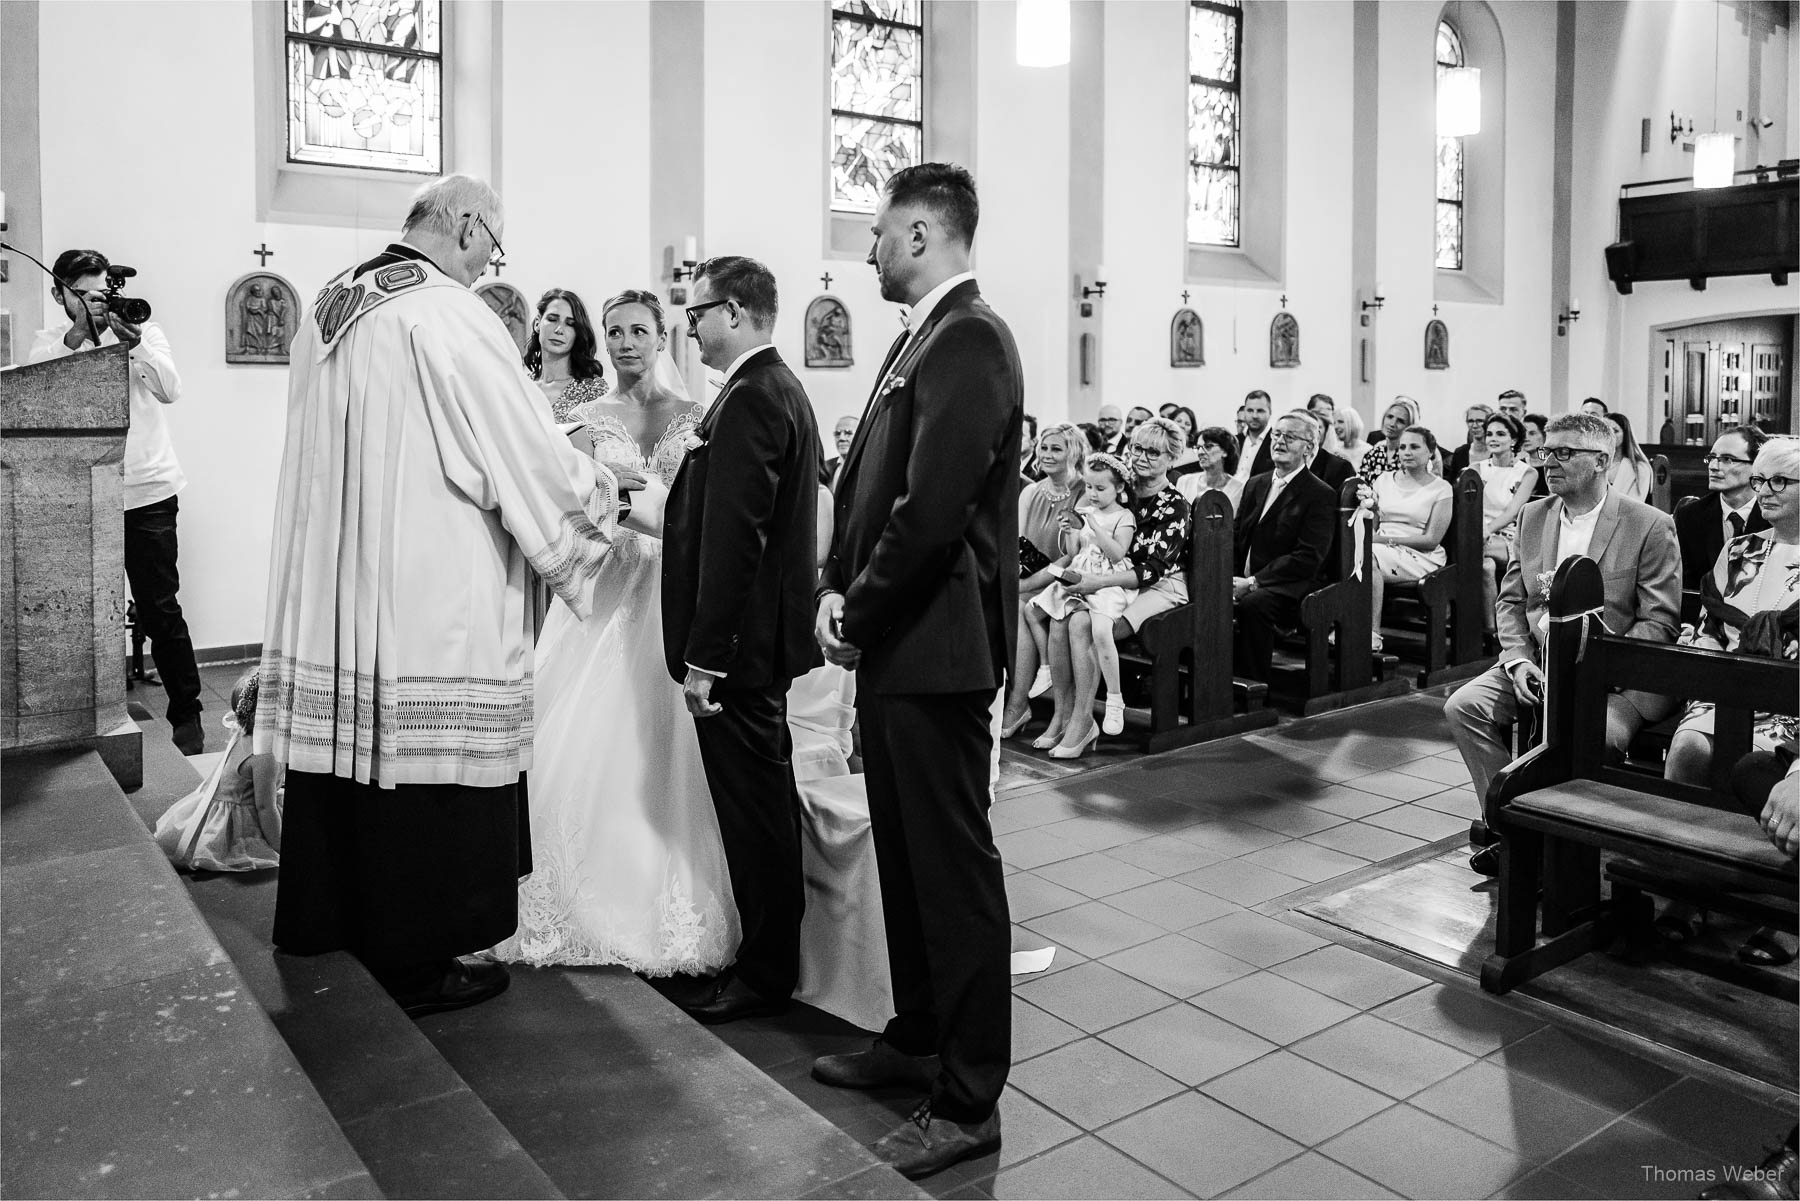 Kirchliche Hochzeit in Rastede und Hochzeitsfeier in der Scheune St. Georg Rastede, Hochzeitsfotograf Thomas Weber aus Oldenburg